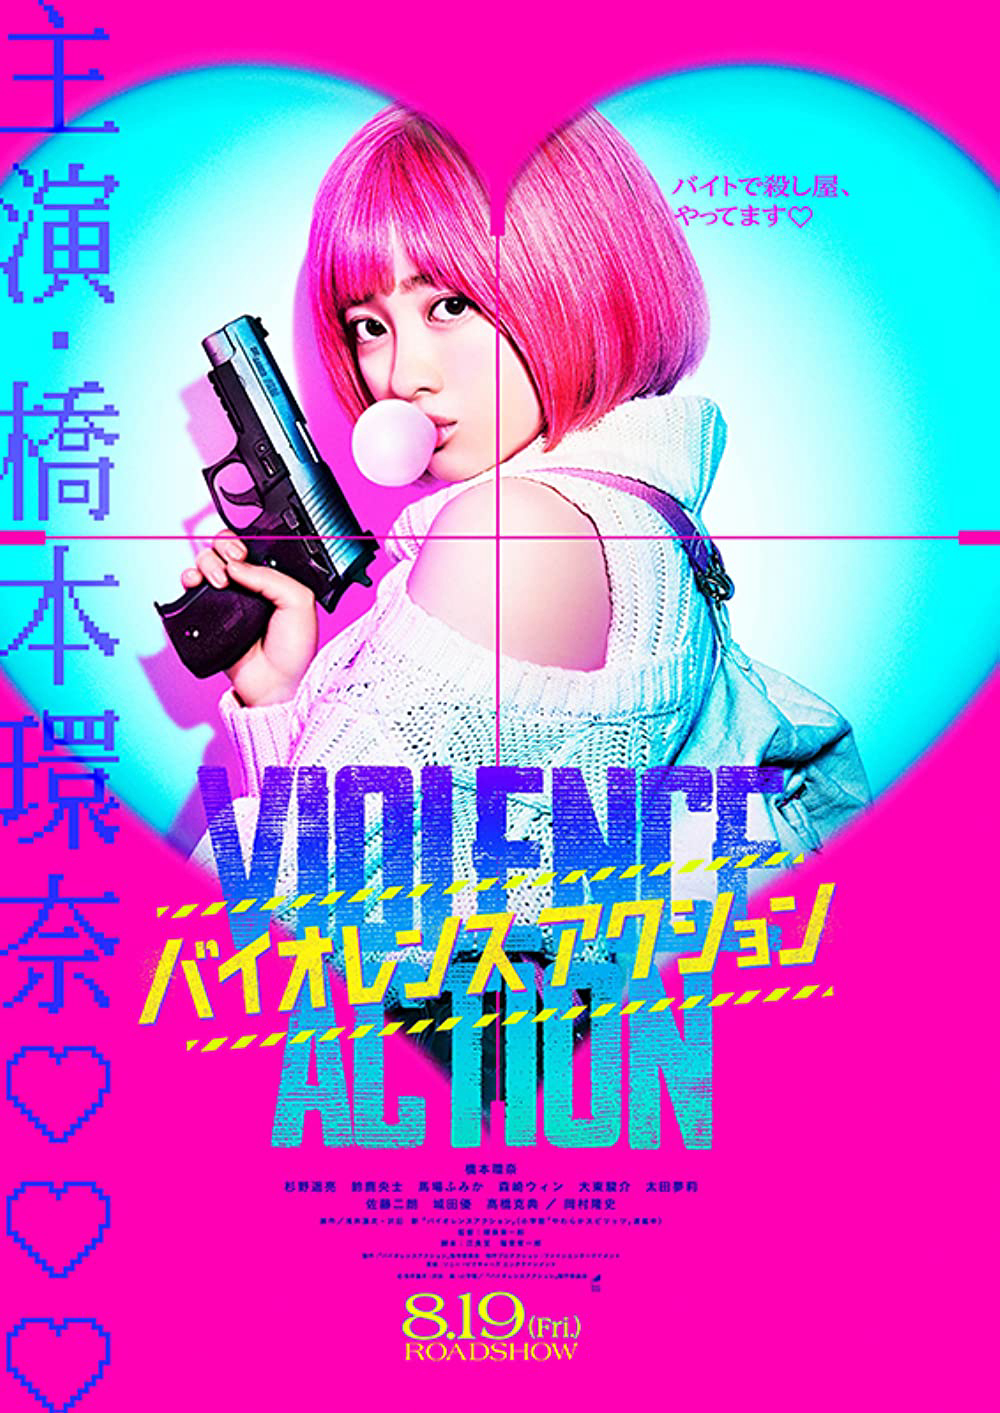 Poster Phim Hành vi bạo ngược (The Violence Action)